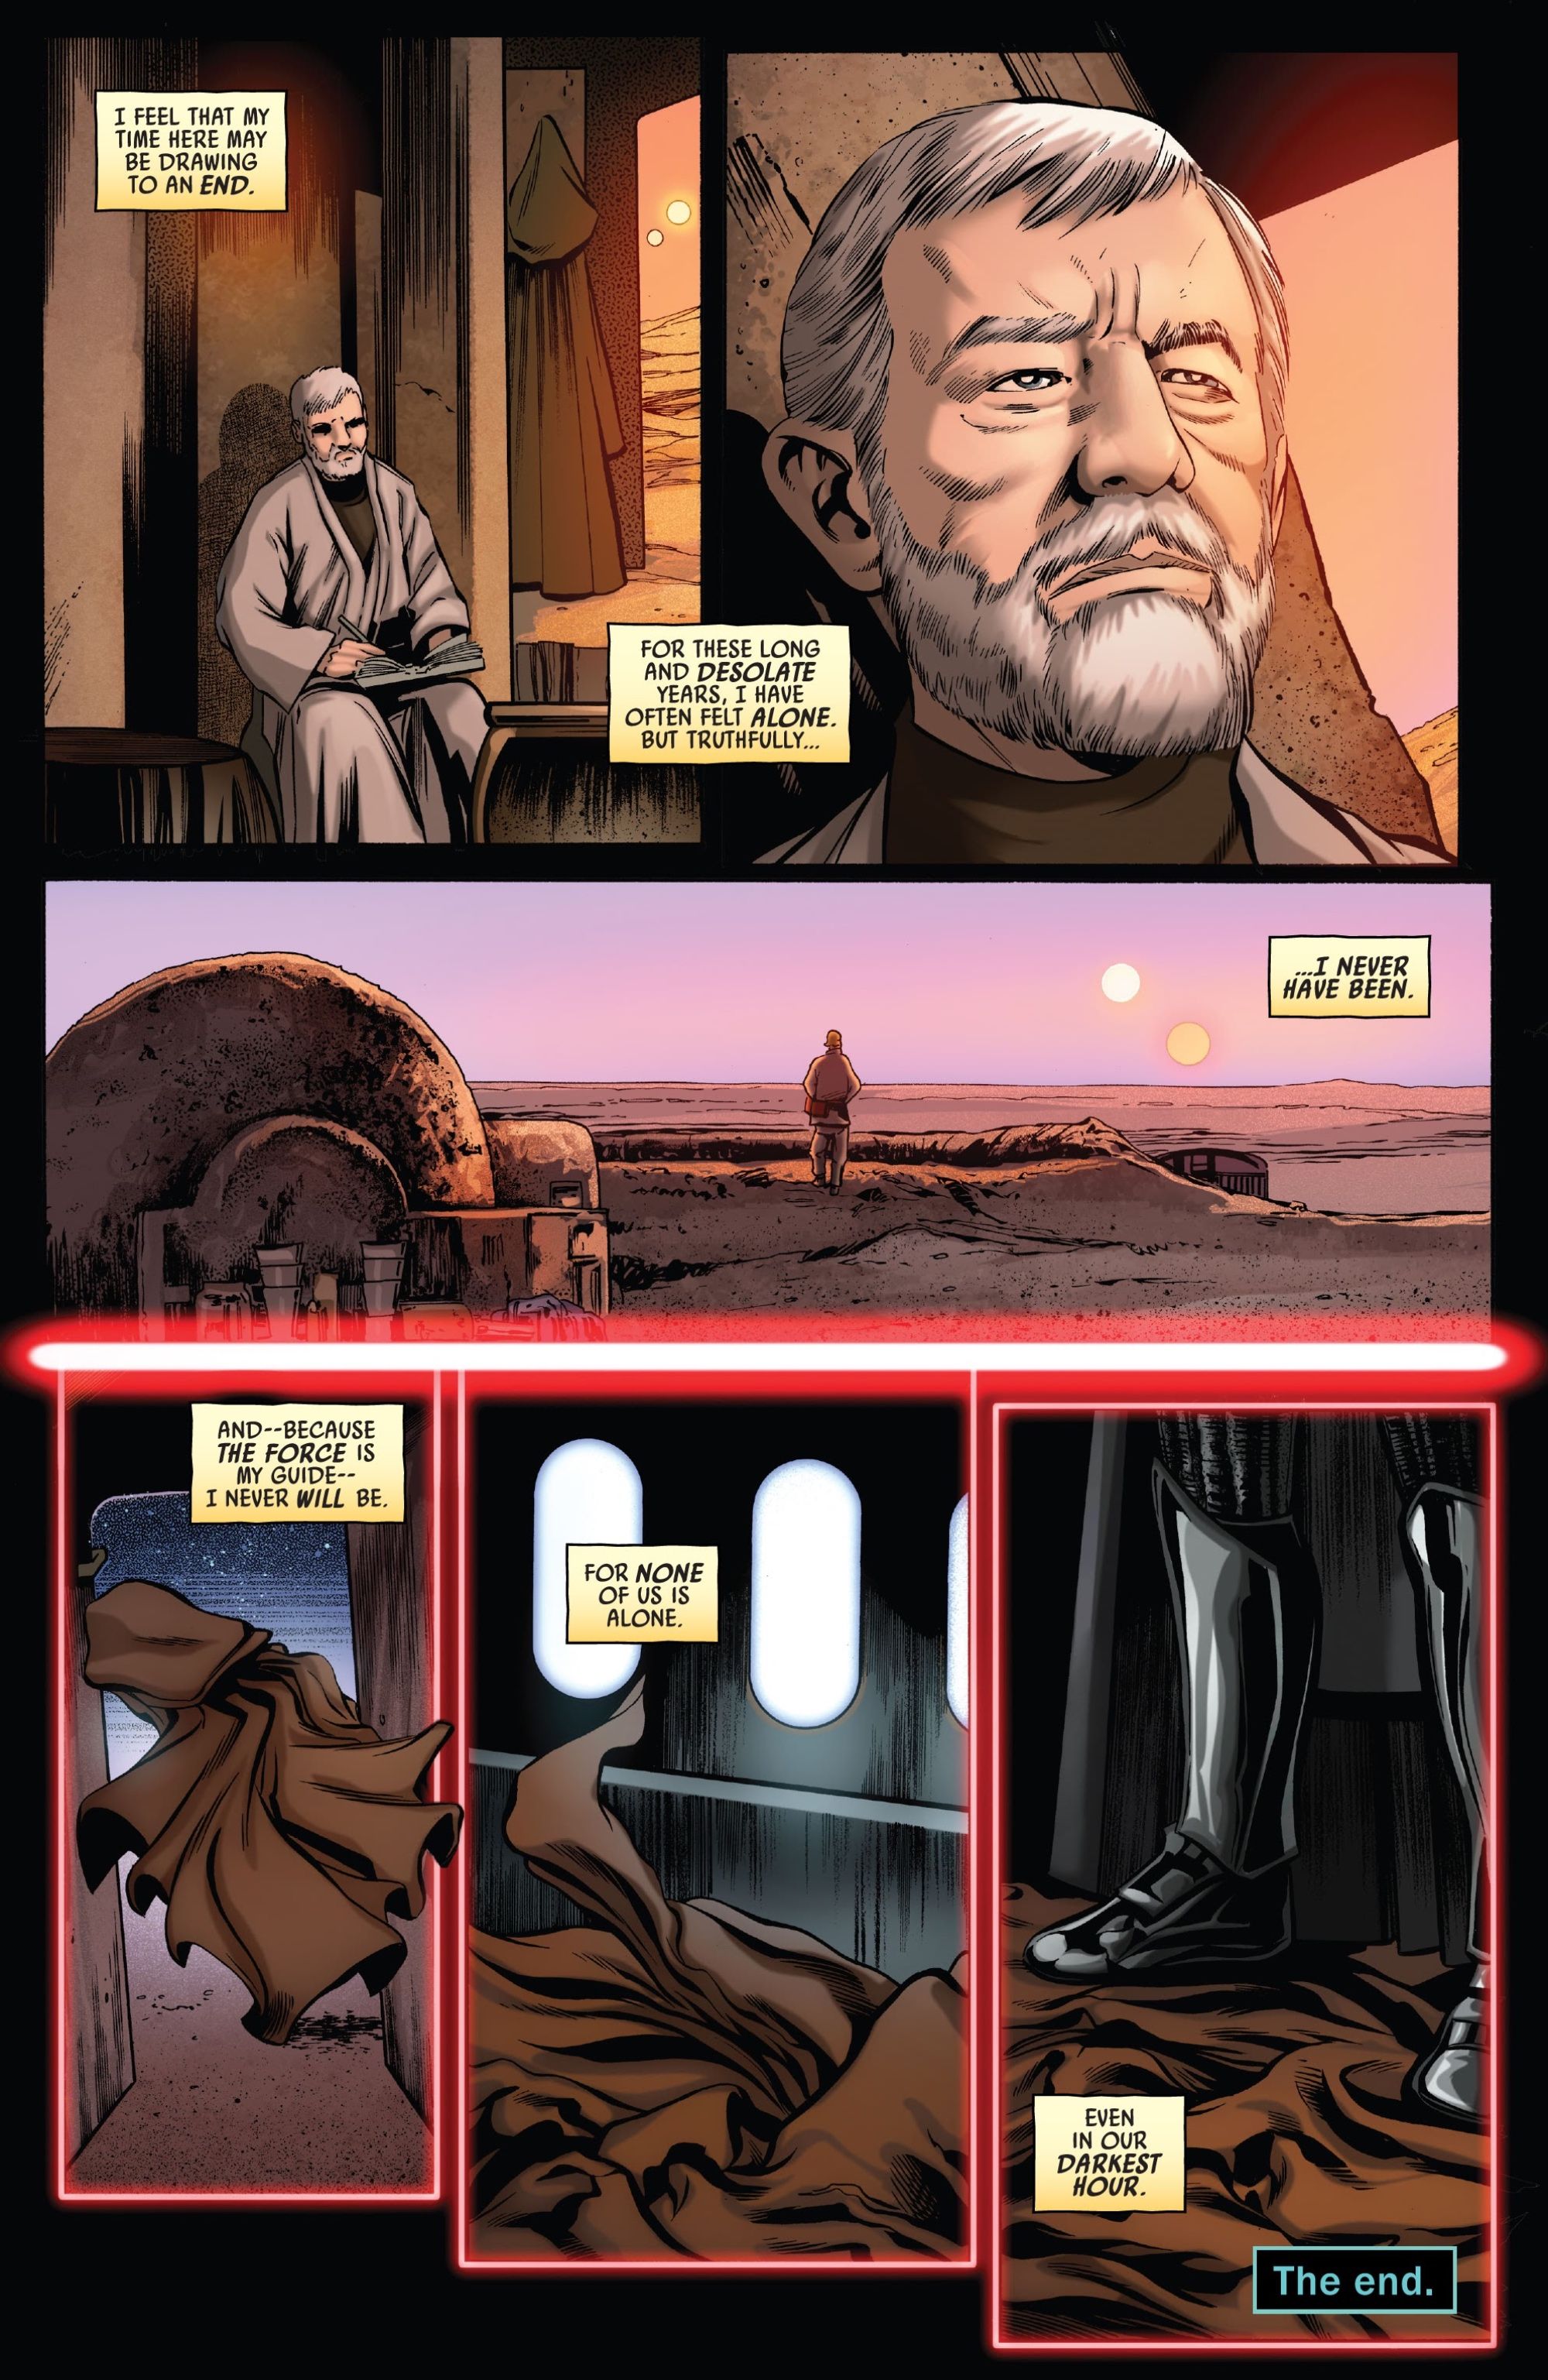 Obi-Wan sente seu duelo com Darth Vader